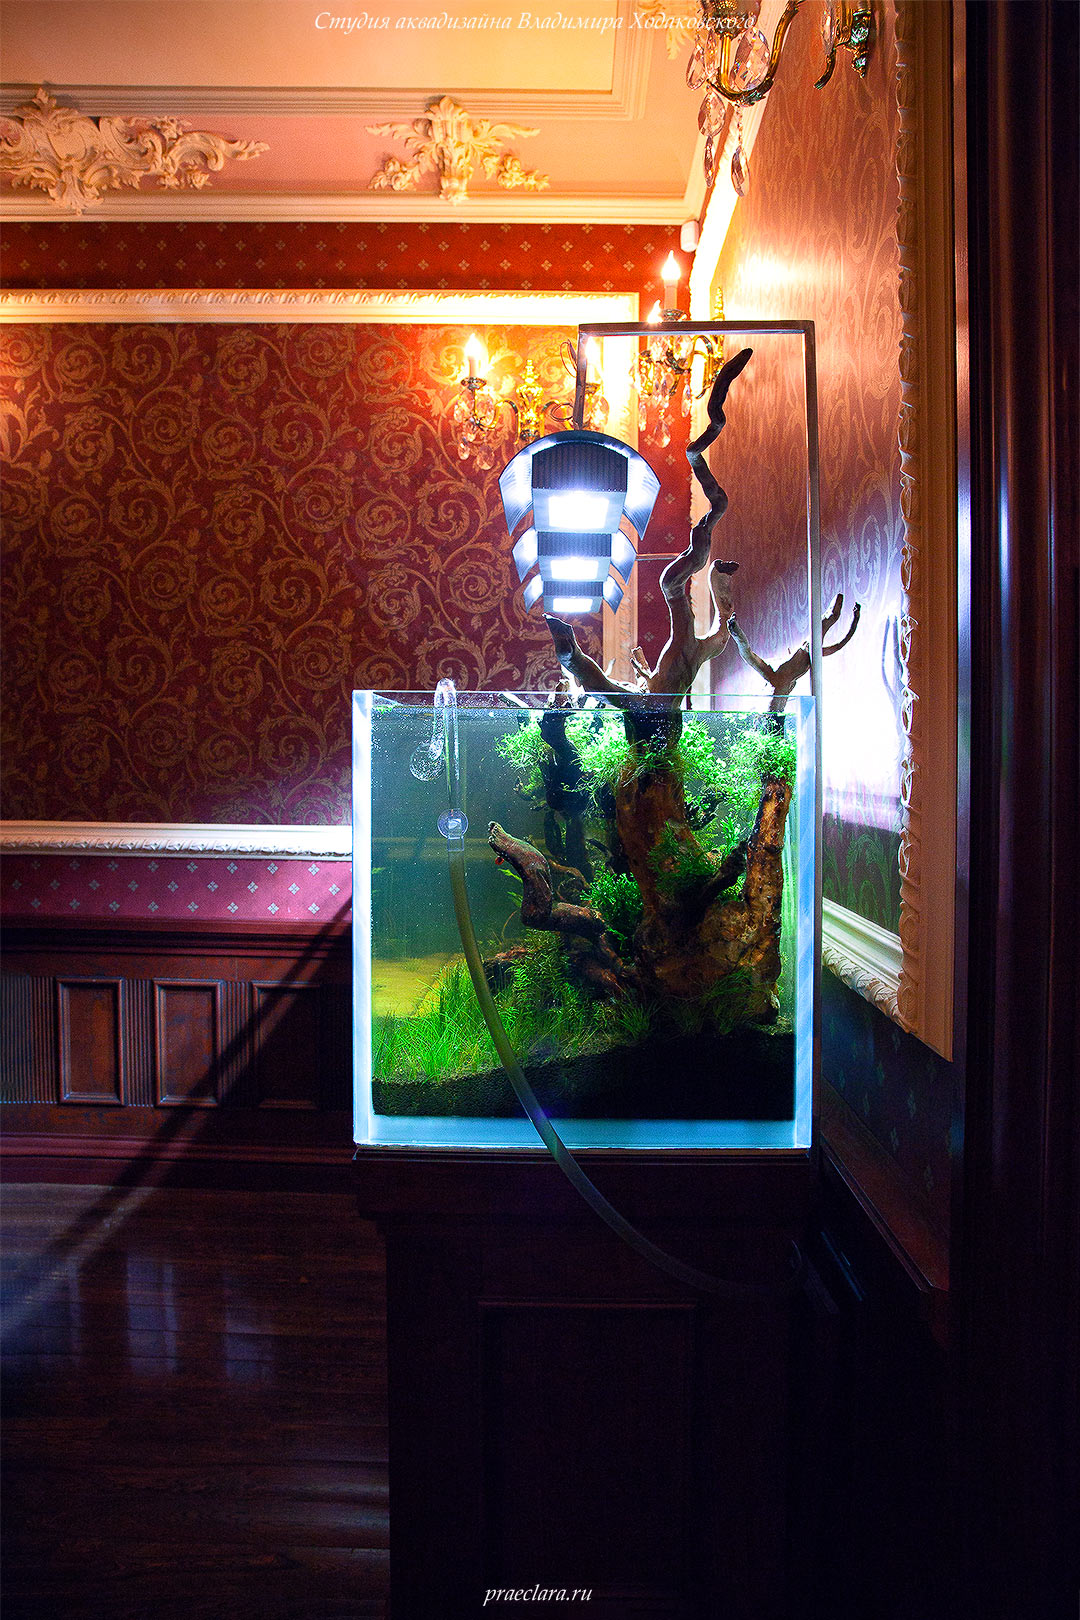 Монтаж подвесных светильников ADA в открытом аквариуме 650л